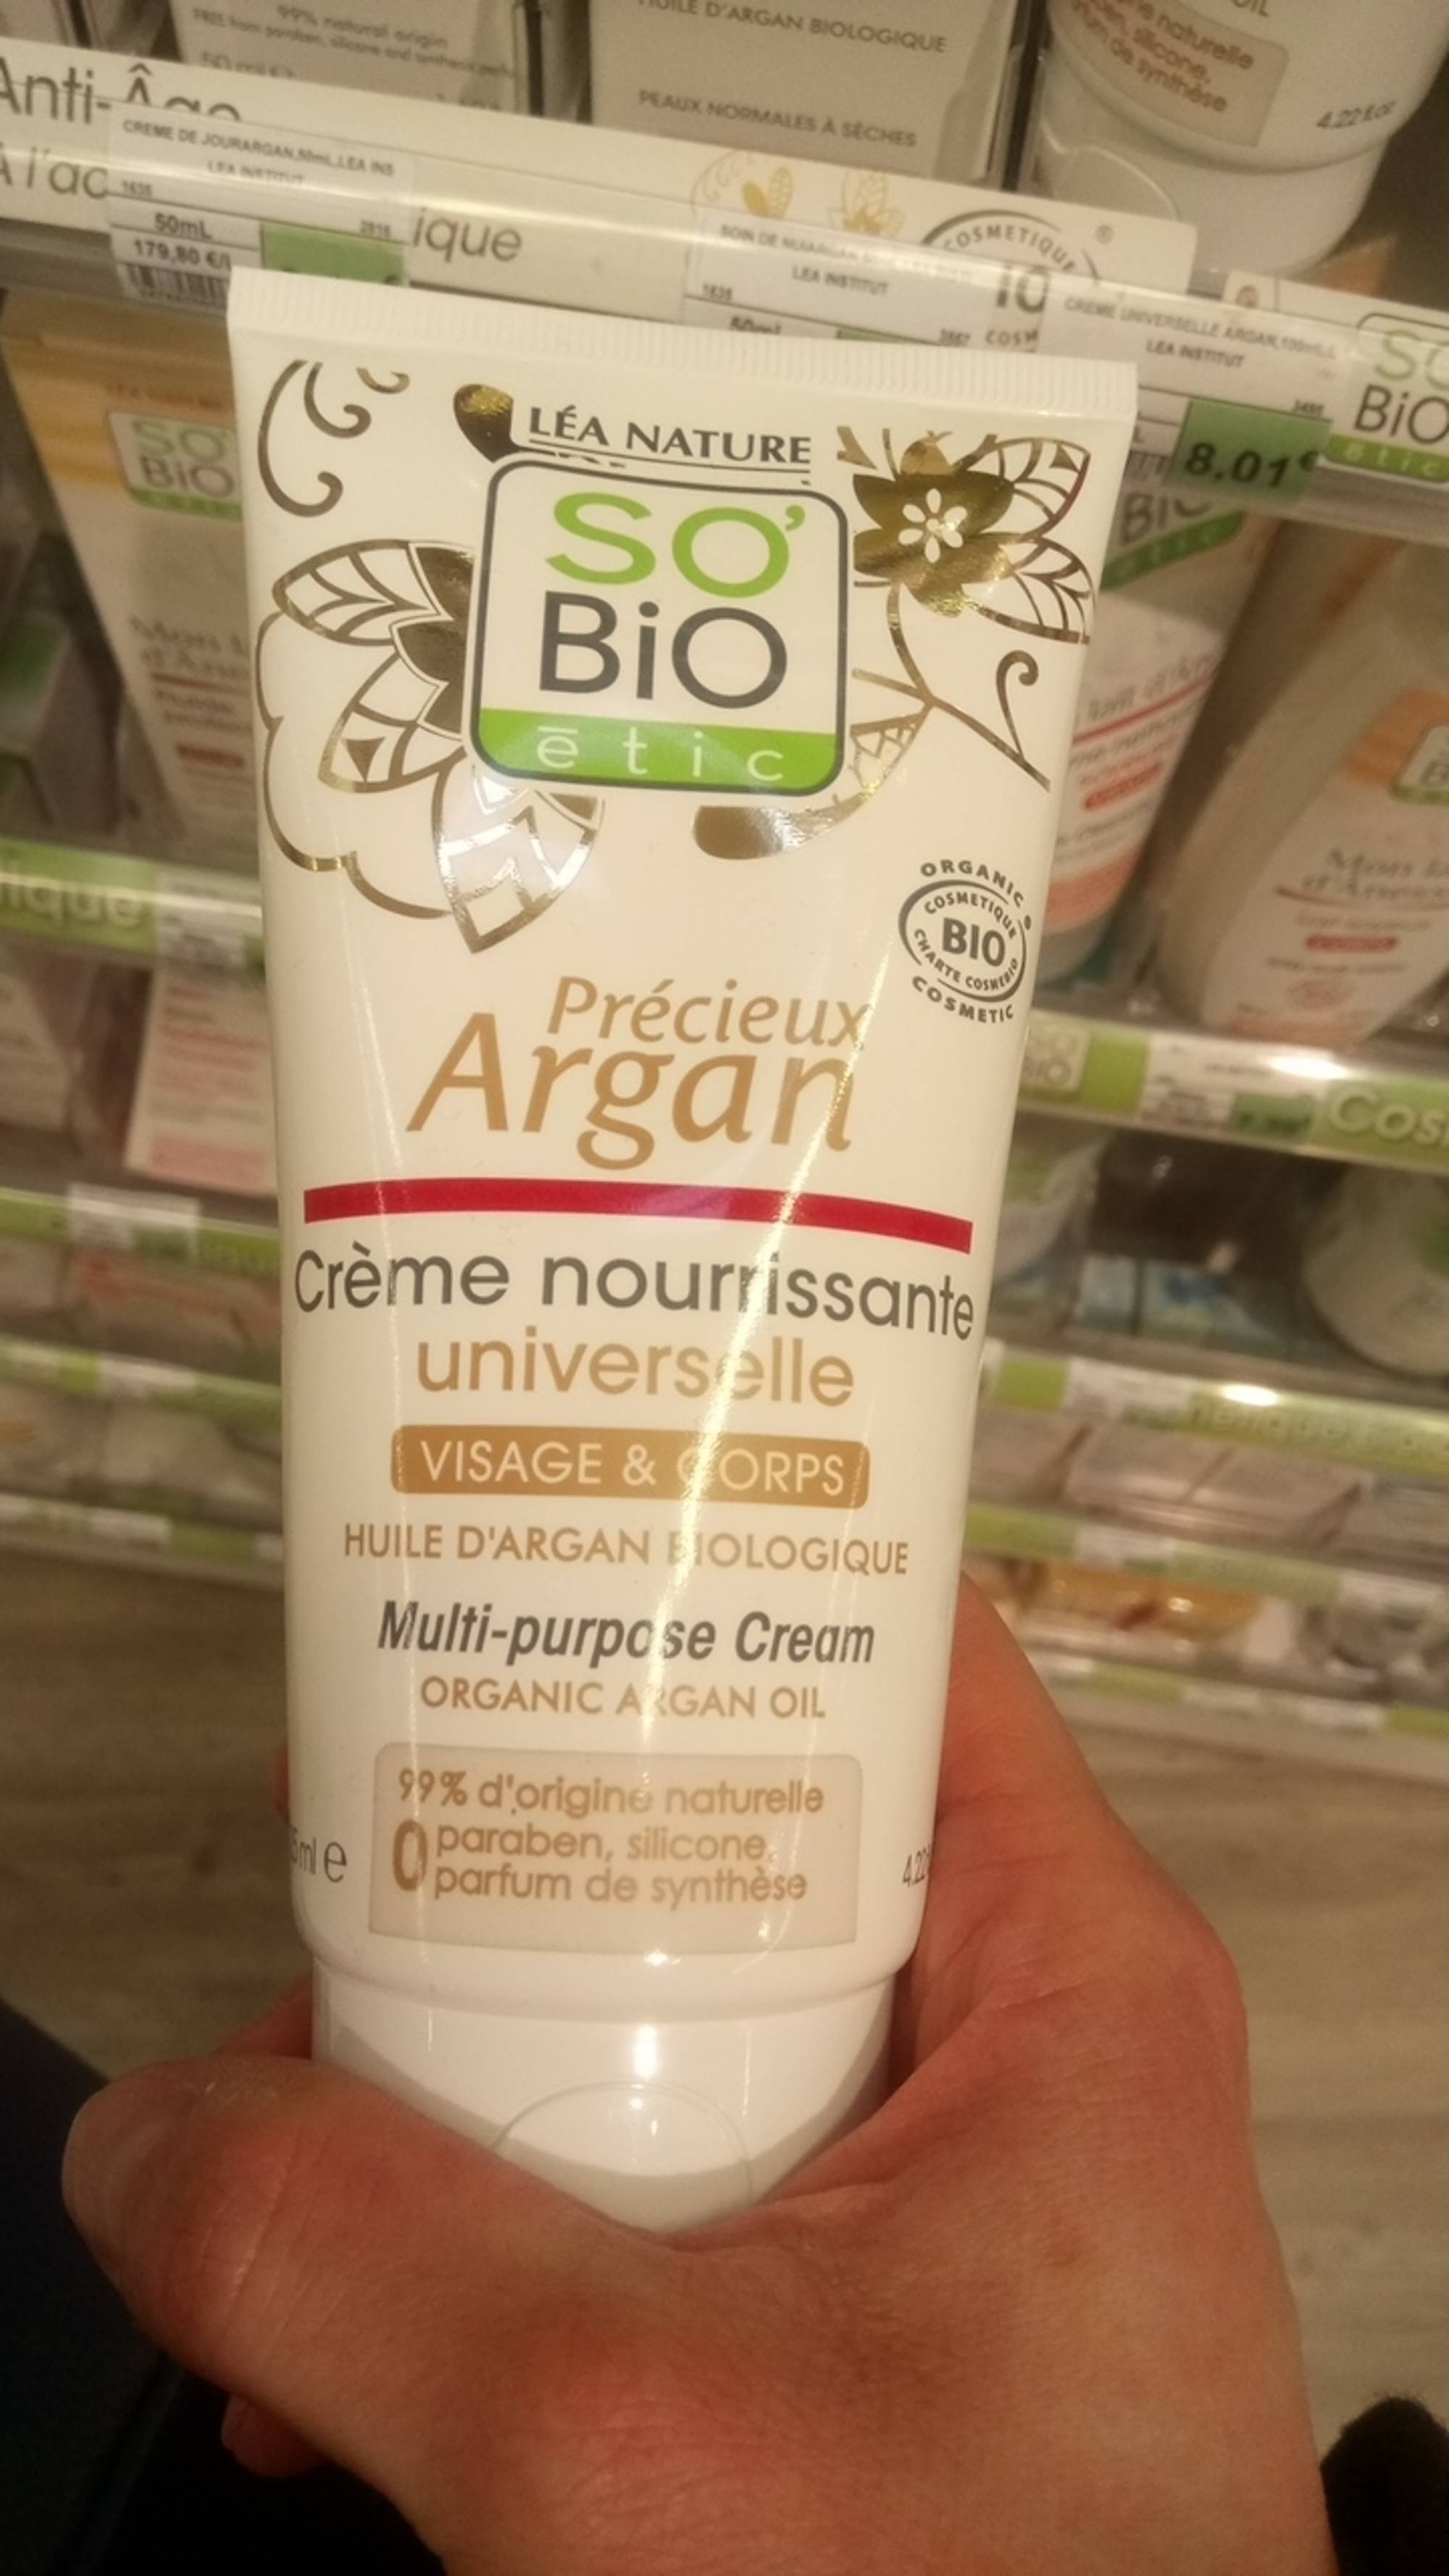 SO'BIO ÉTIC - Précieux Argan - Crème nourrissante universelle